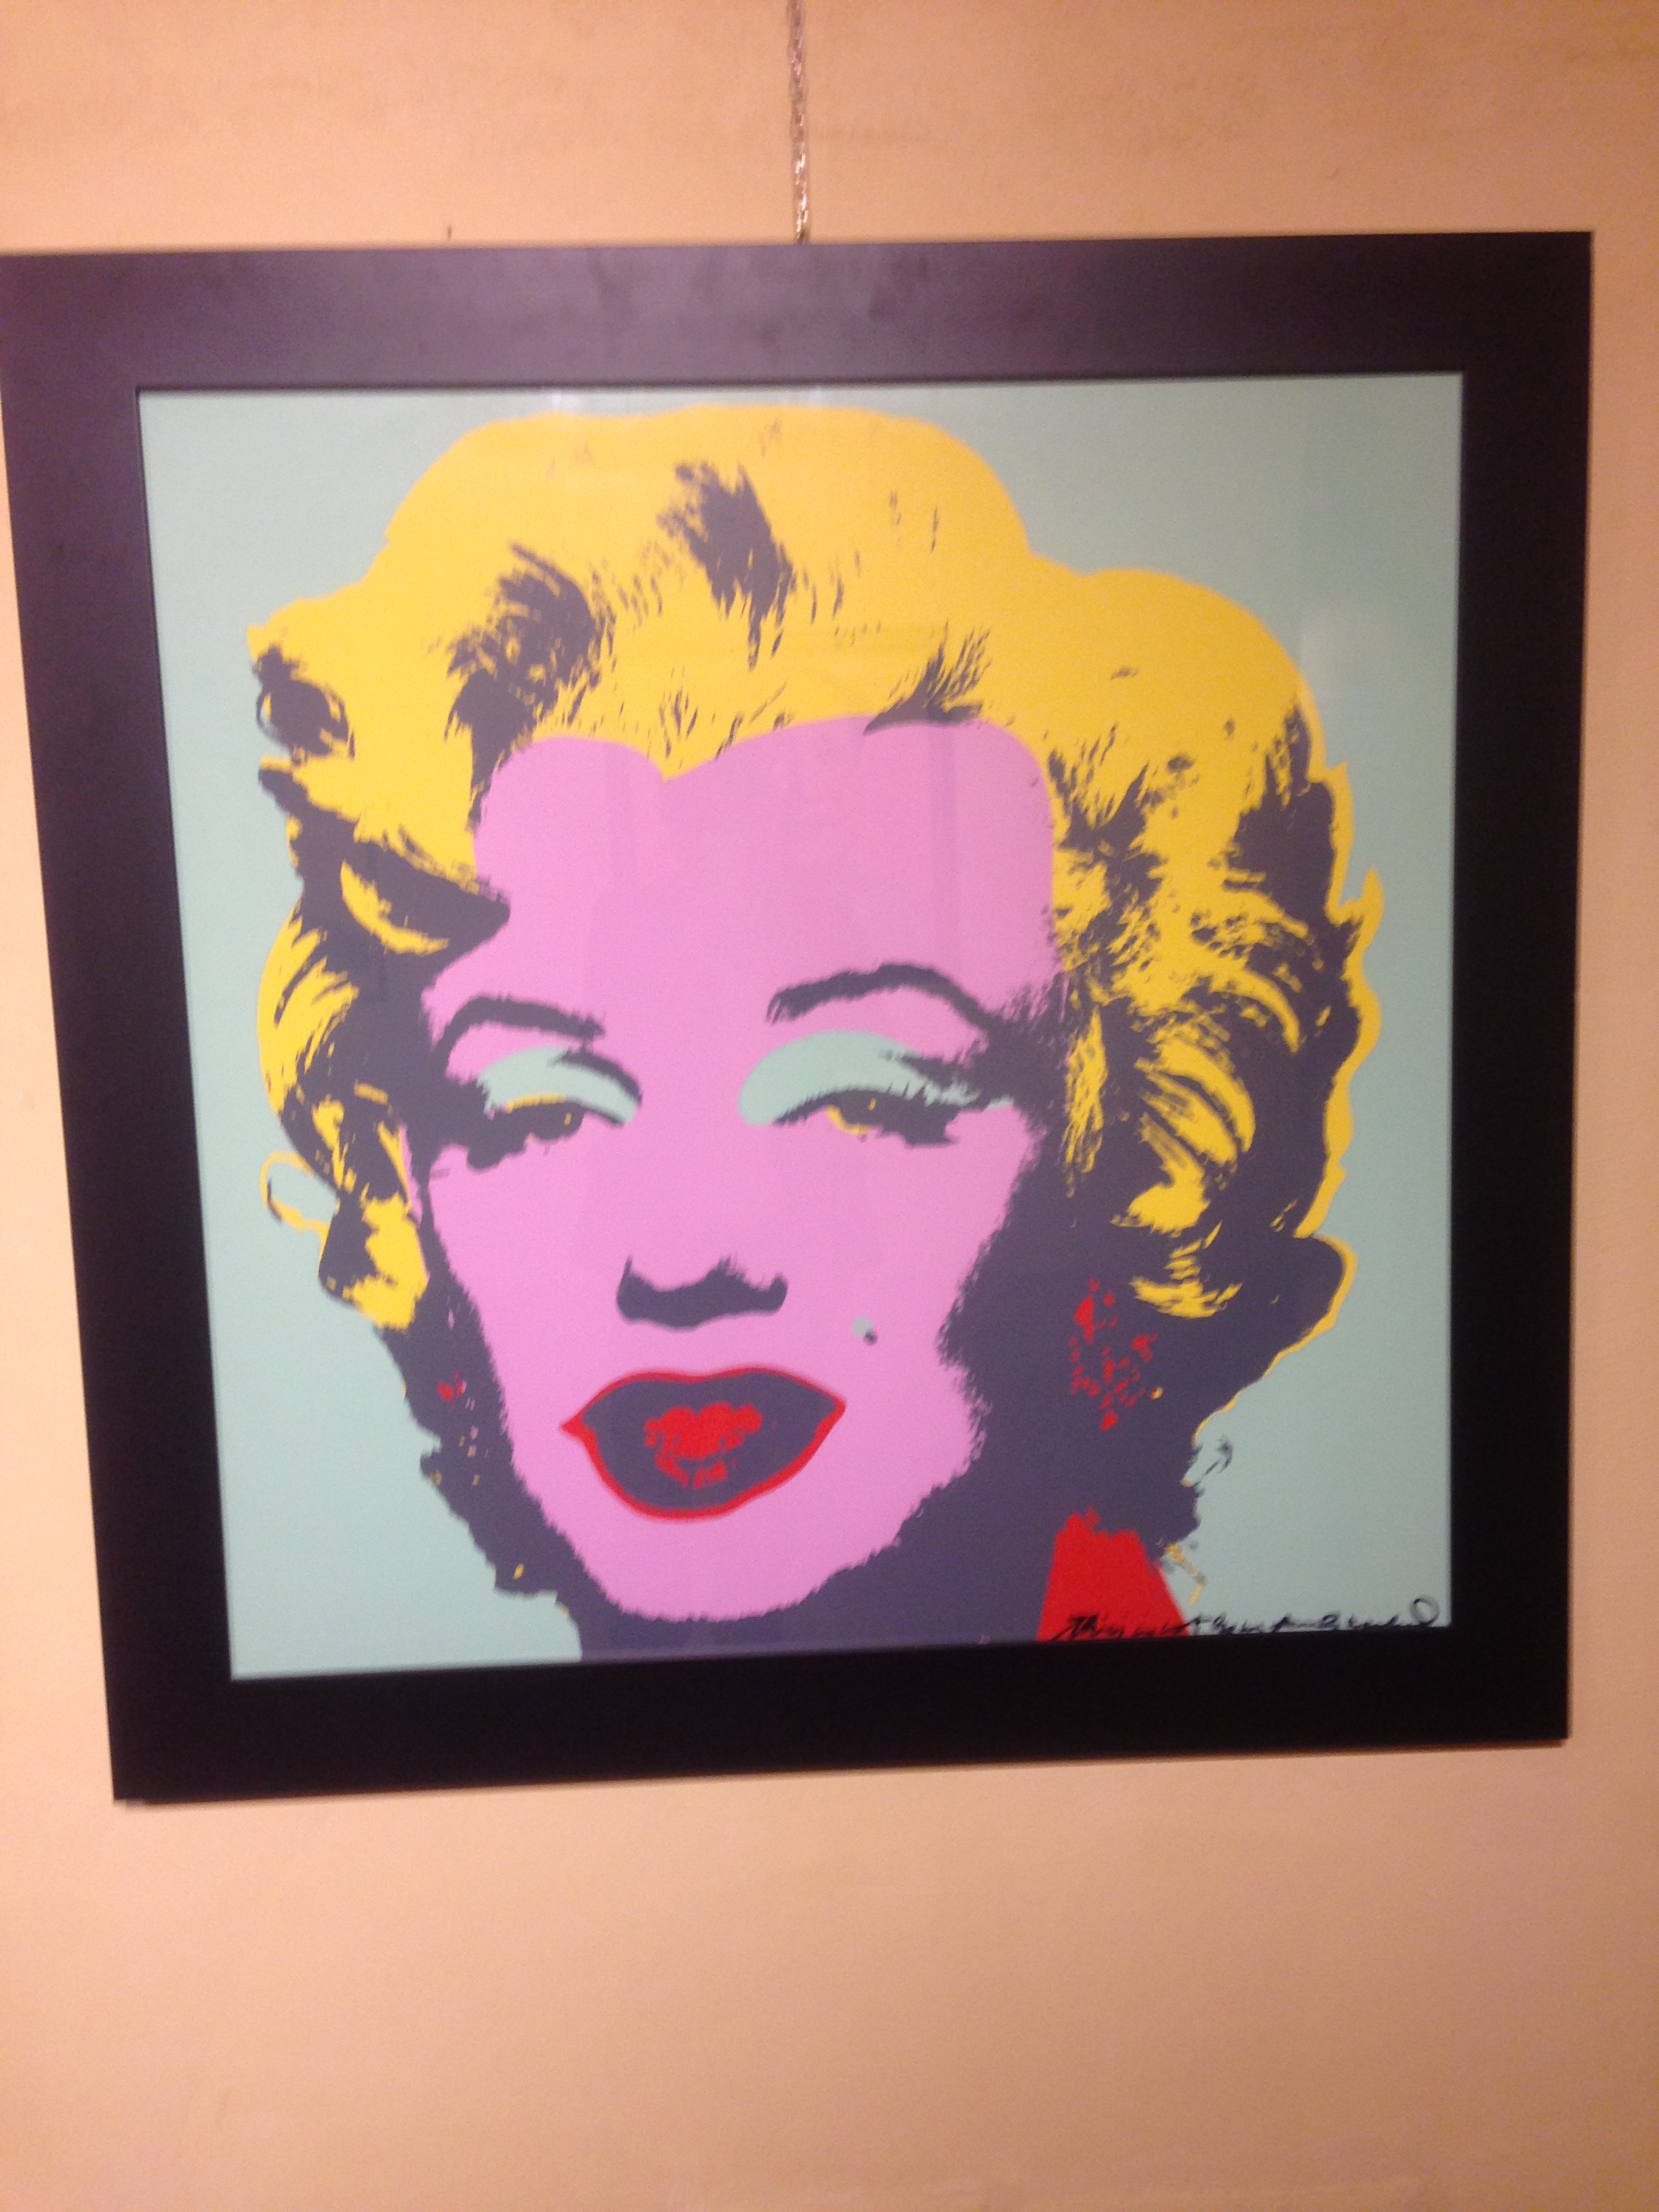 Chiude la mostra di Andy Warhol, “molto più di un selfie”